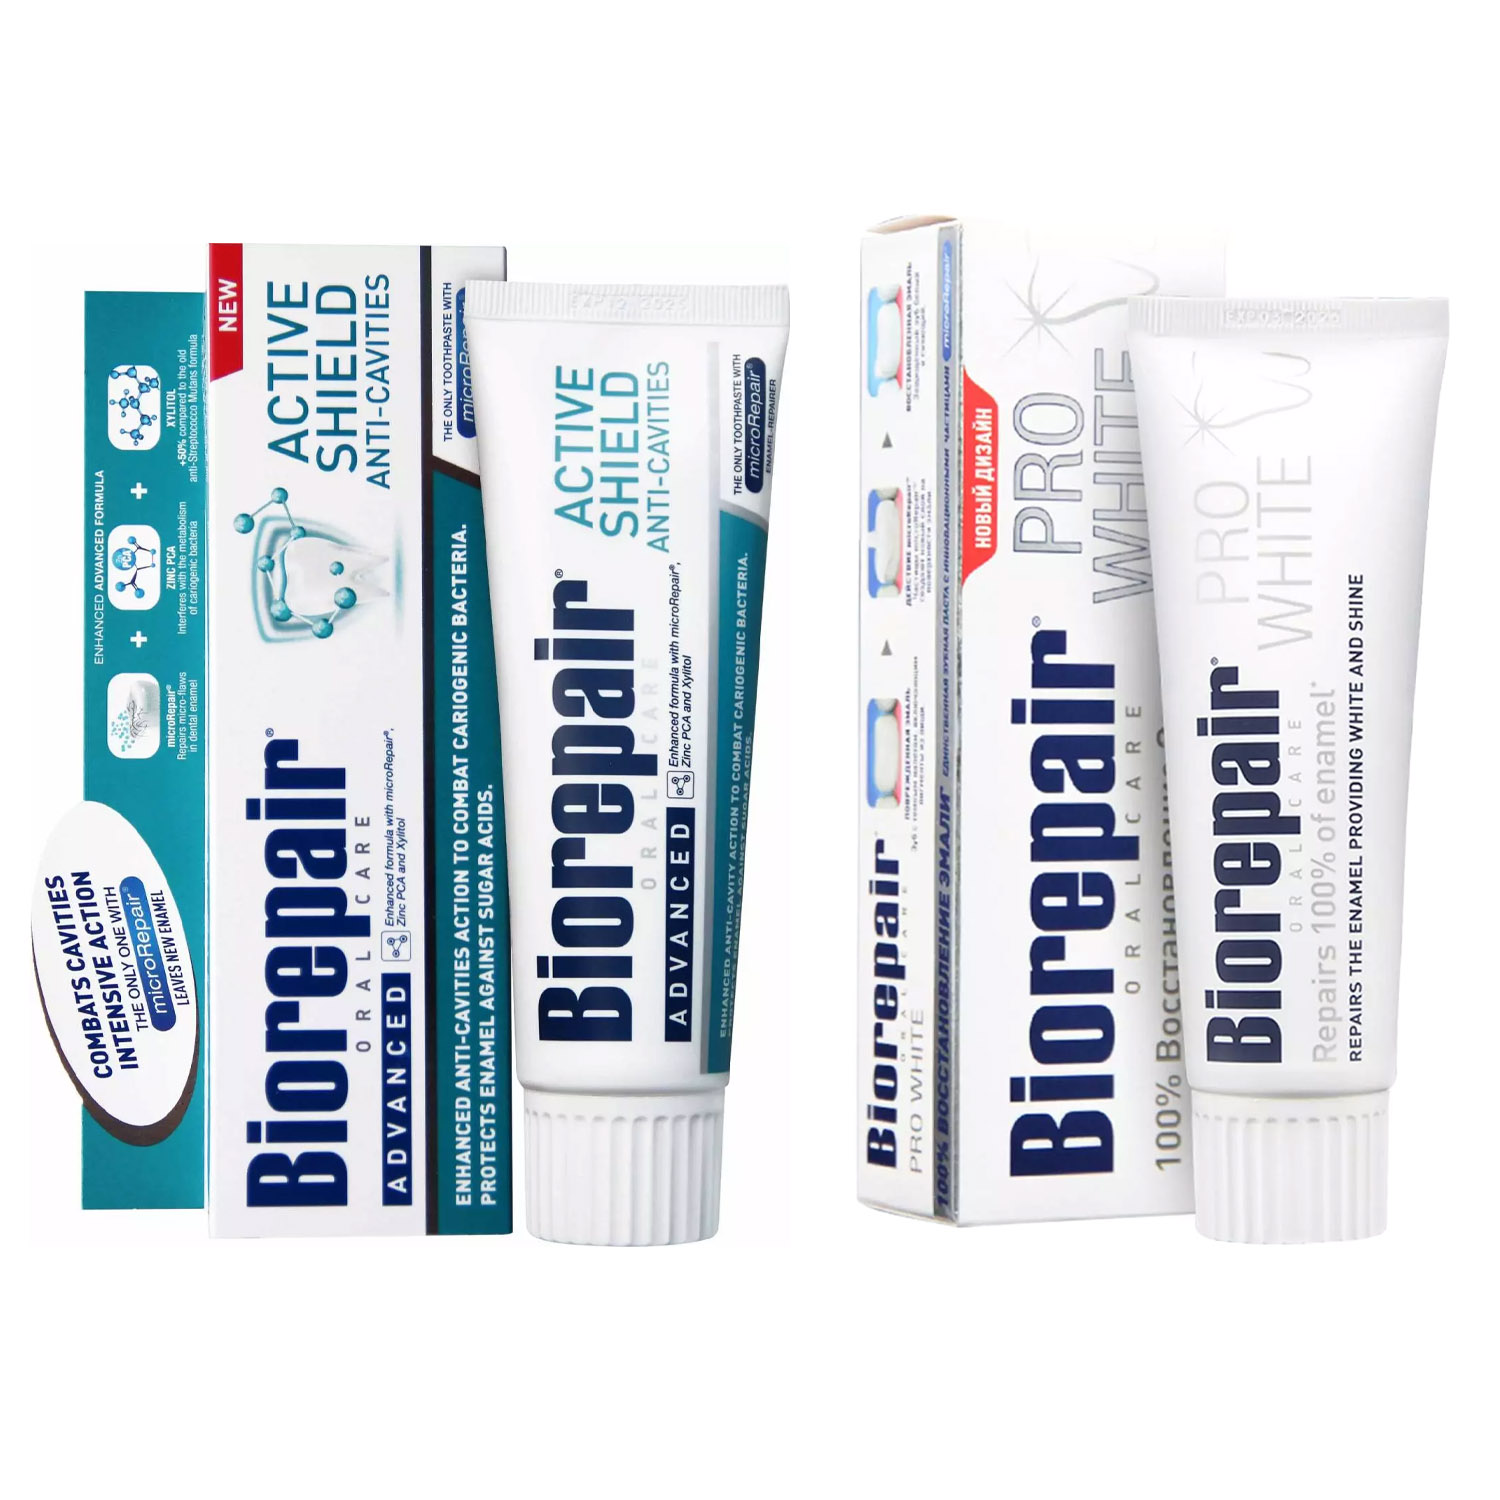 Biorepair Набор зубных паст для защиты эмали и сохранения белизны зубов, 2х75 мл (Biorepair, Отбеливание и лечение) biorepair набор зубных паст для комплексной защиты 2х75 мл biorepair ежедневная забота